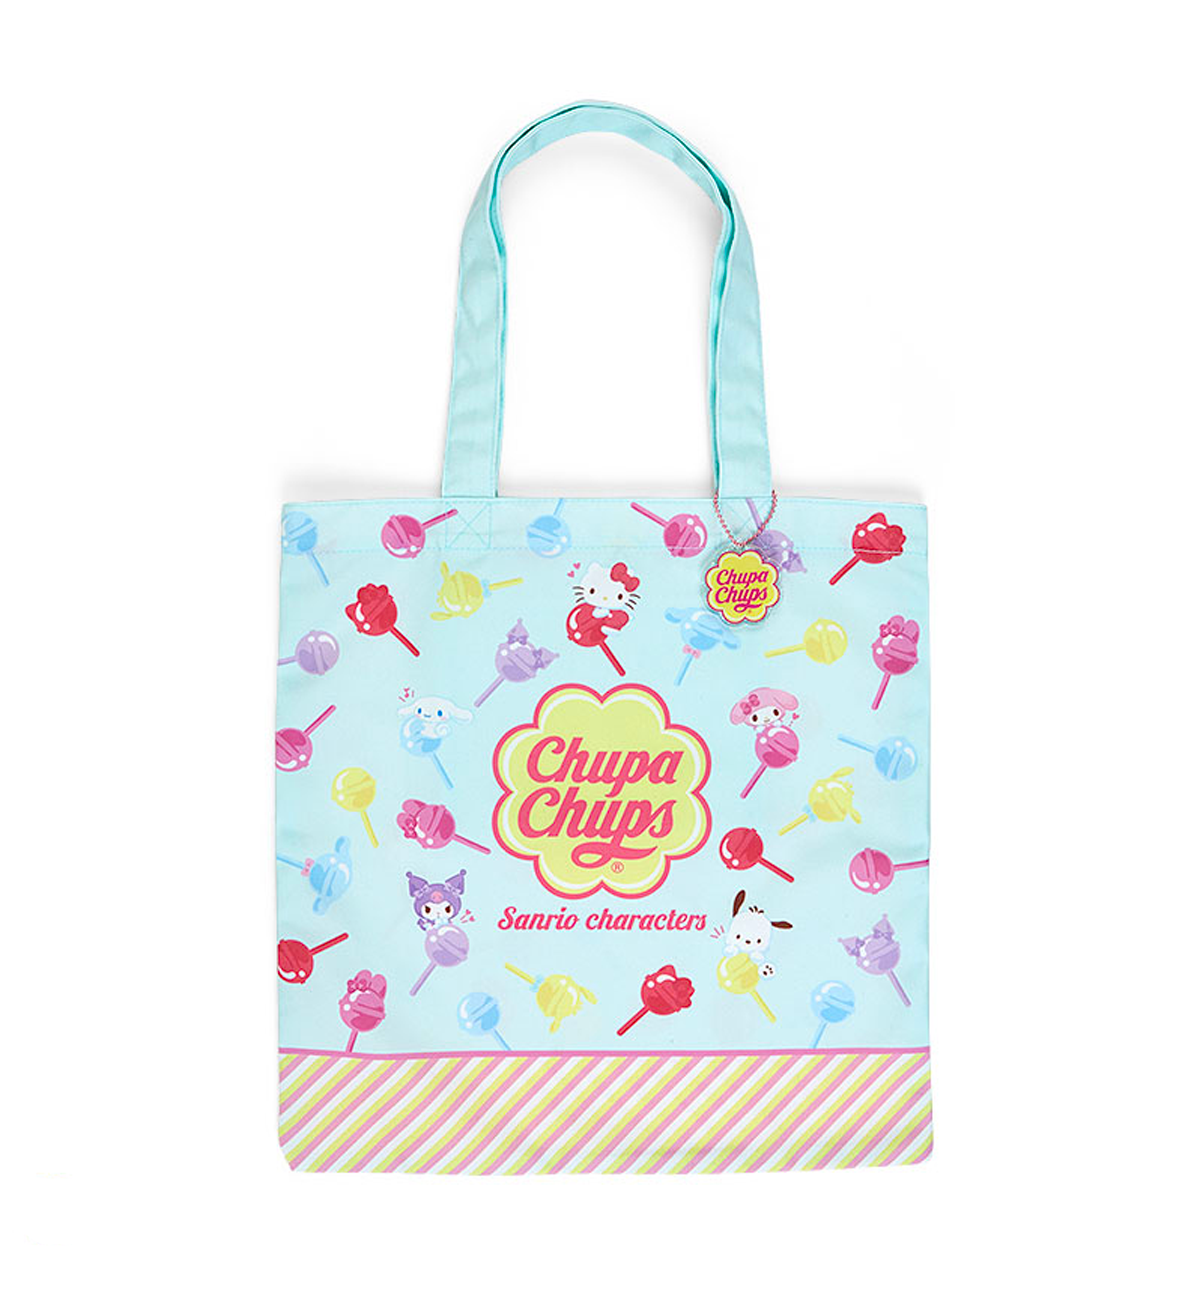 Sanrio Characters & Chupa Chups Tote Bag [Limited Edition]